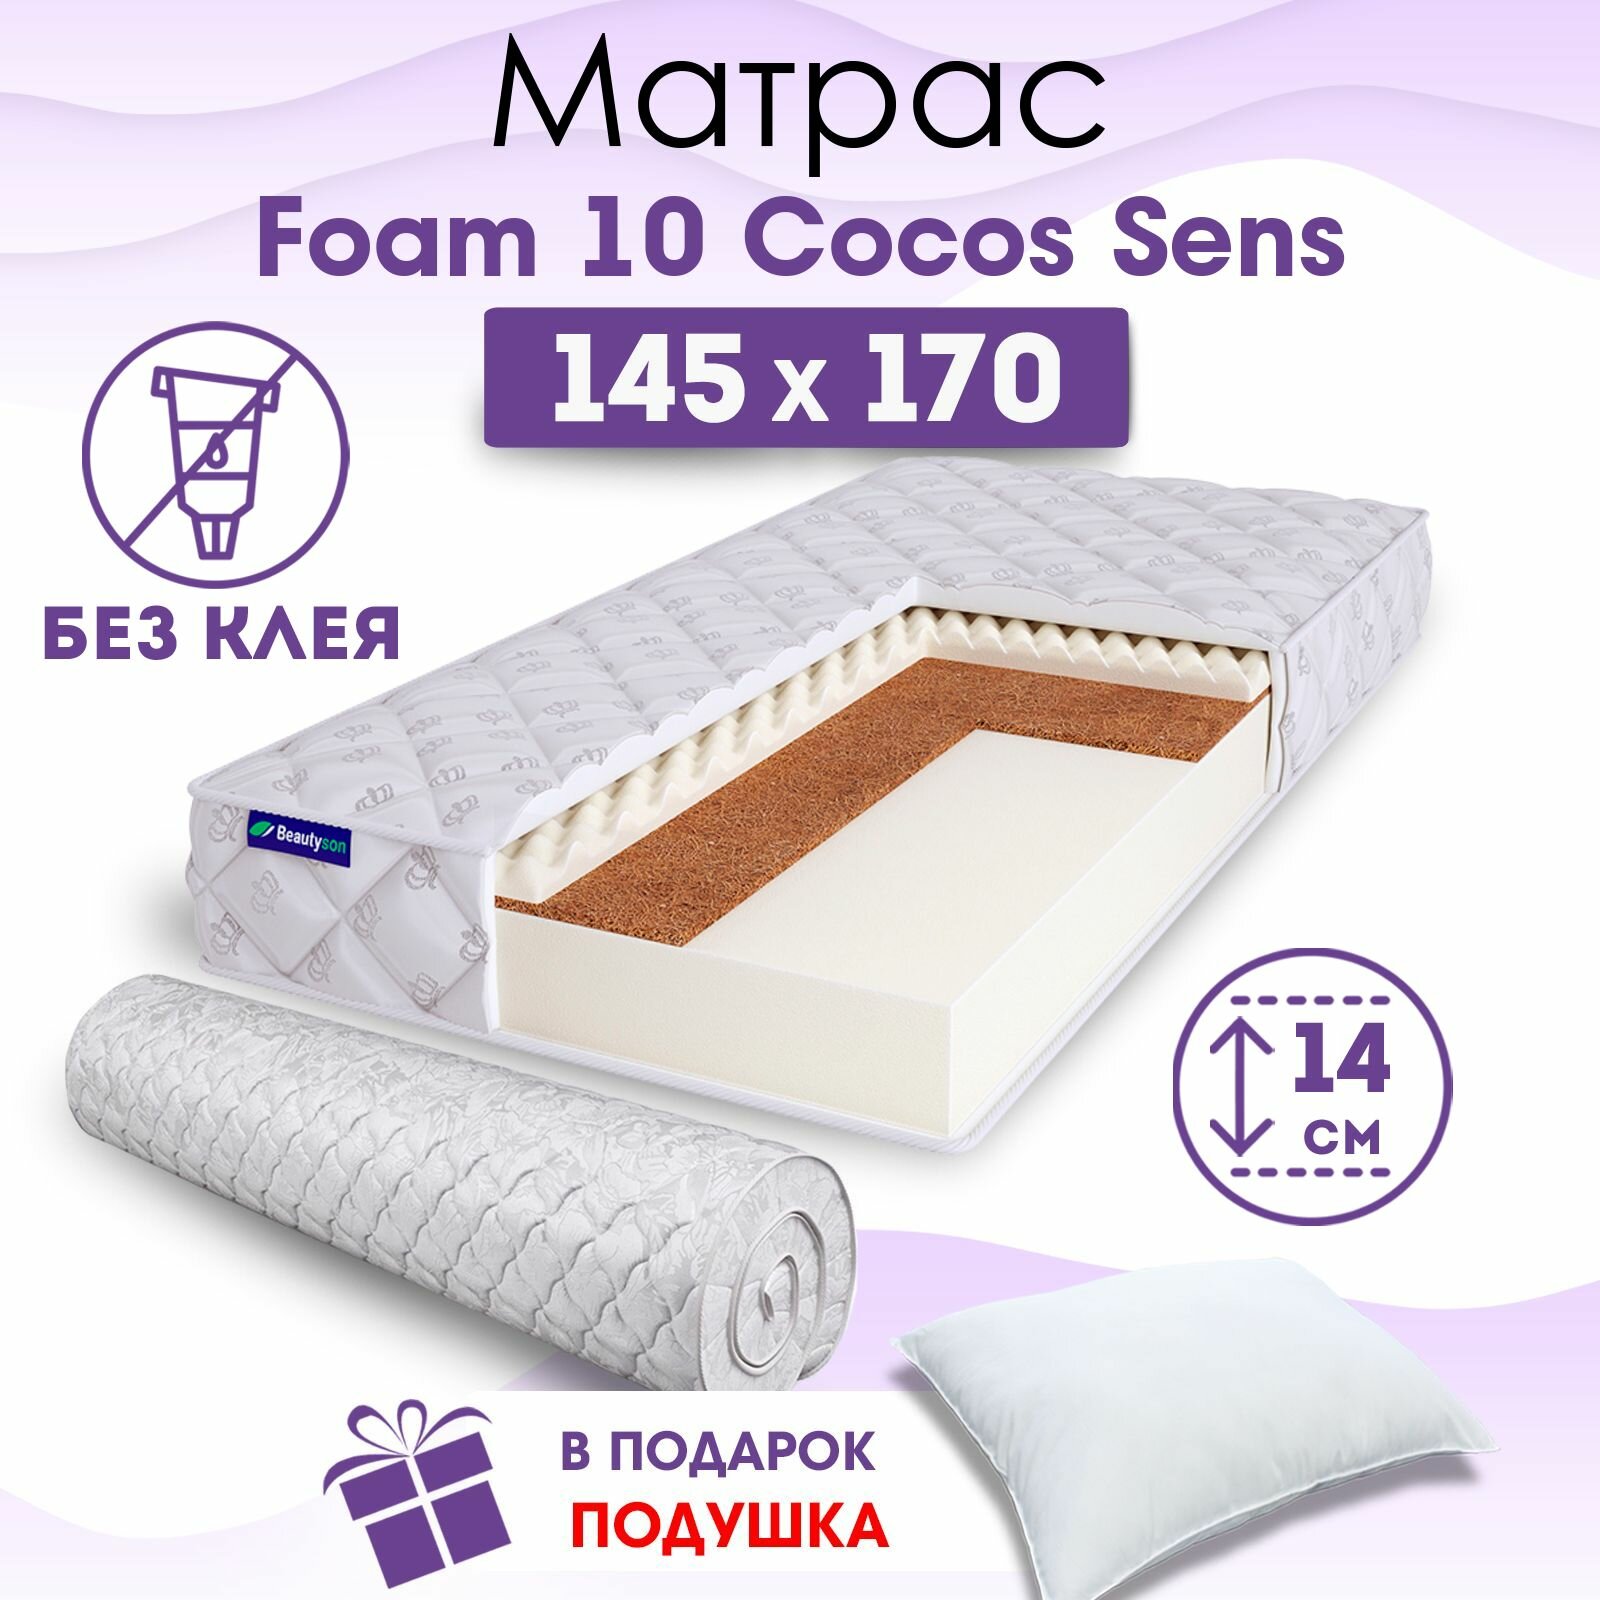 Ортопедический матрас Beautyson Foam 10 Cocos Sens без клея, 145х170, 14 см, беспружинный, двуспальный, на кровать, для дивана, умеренно мягкий